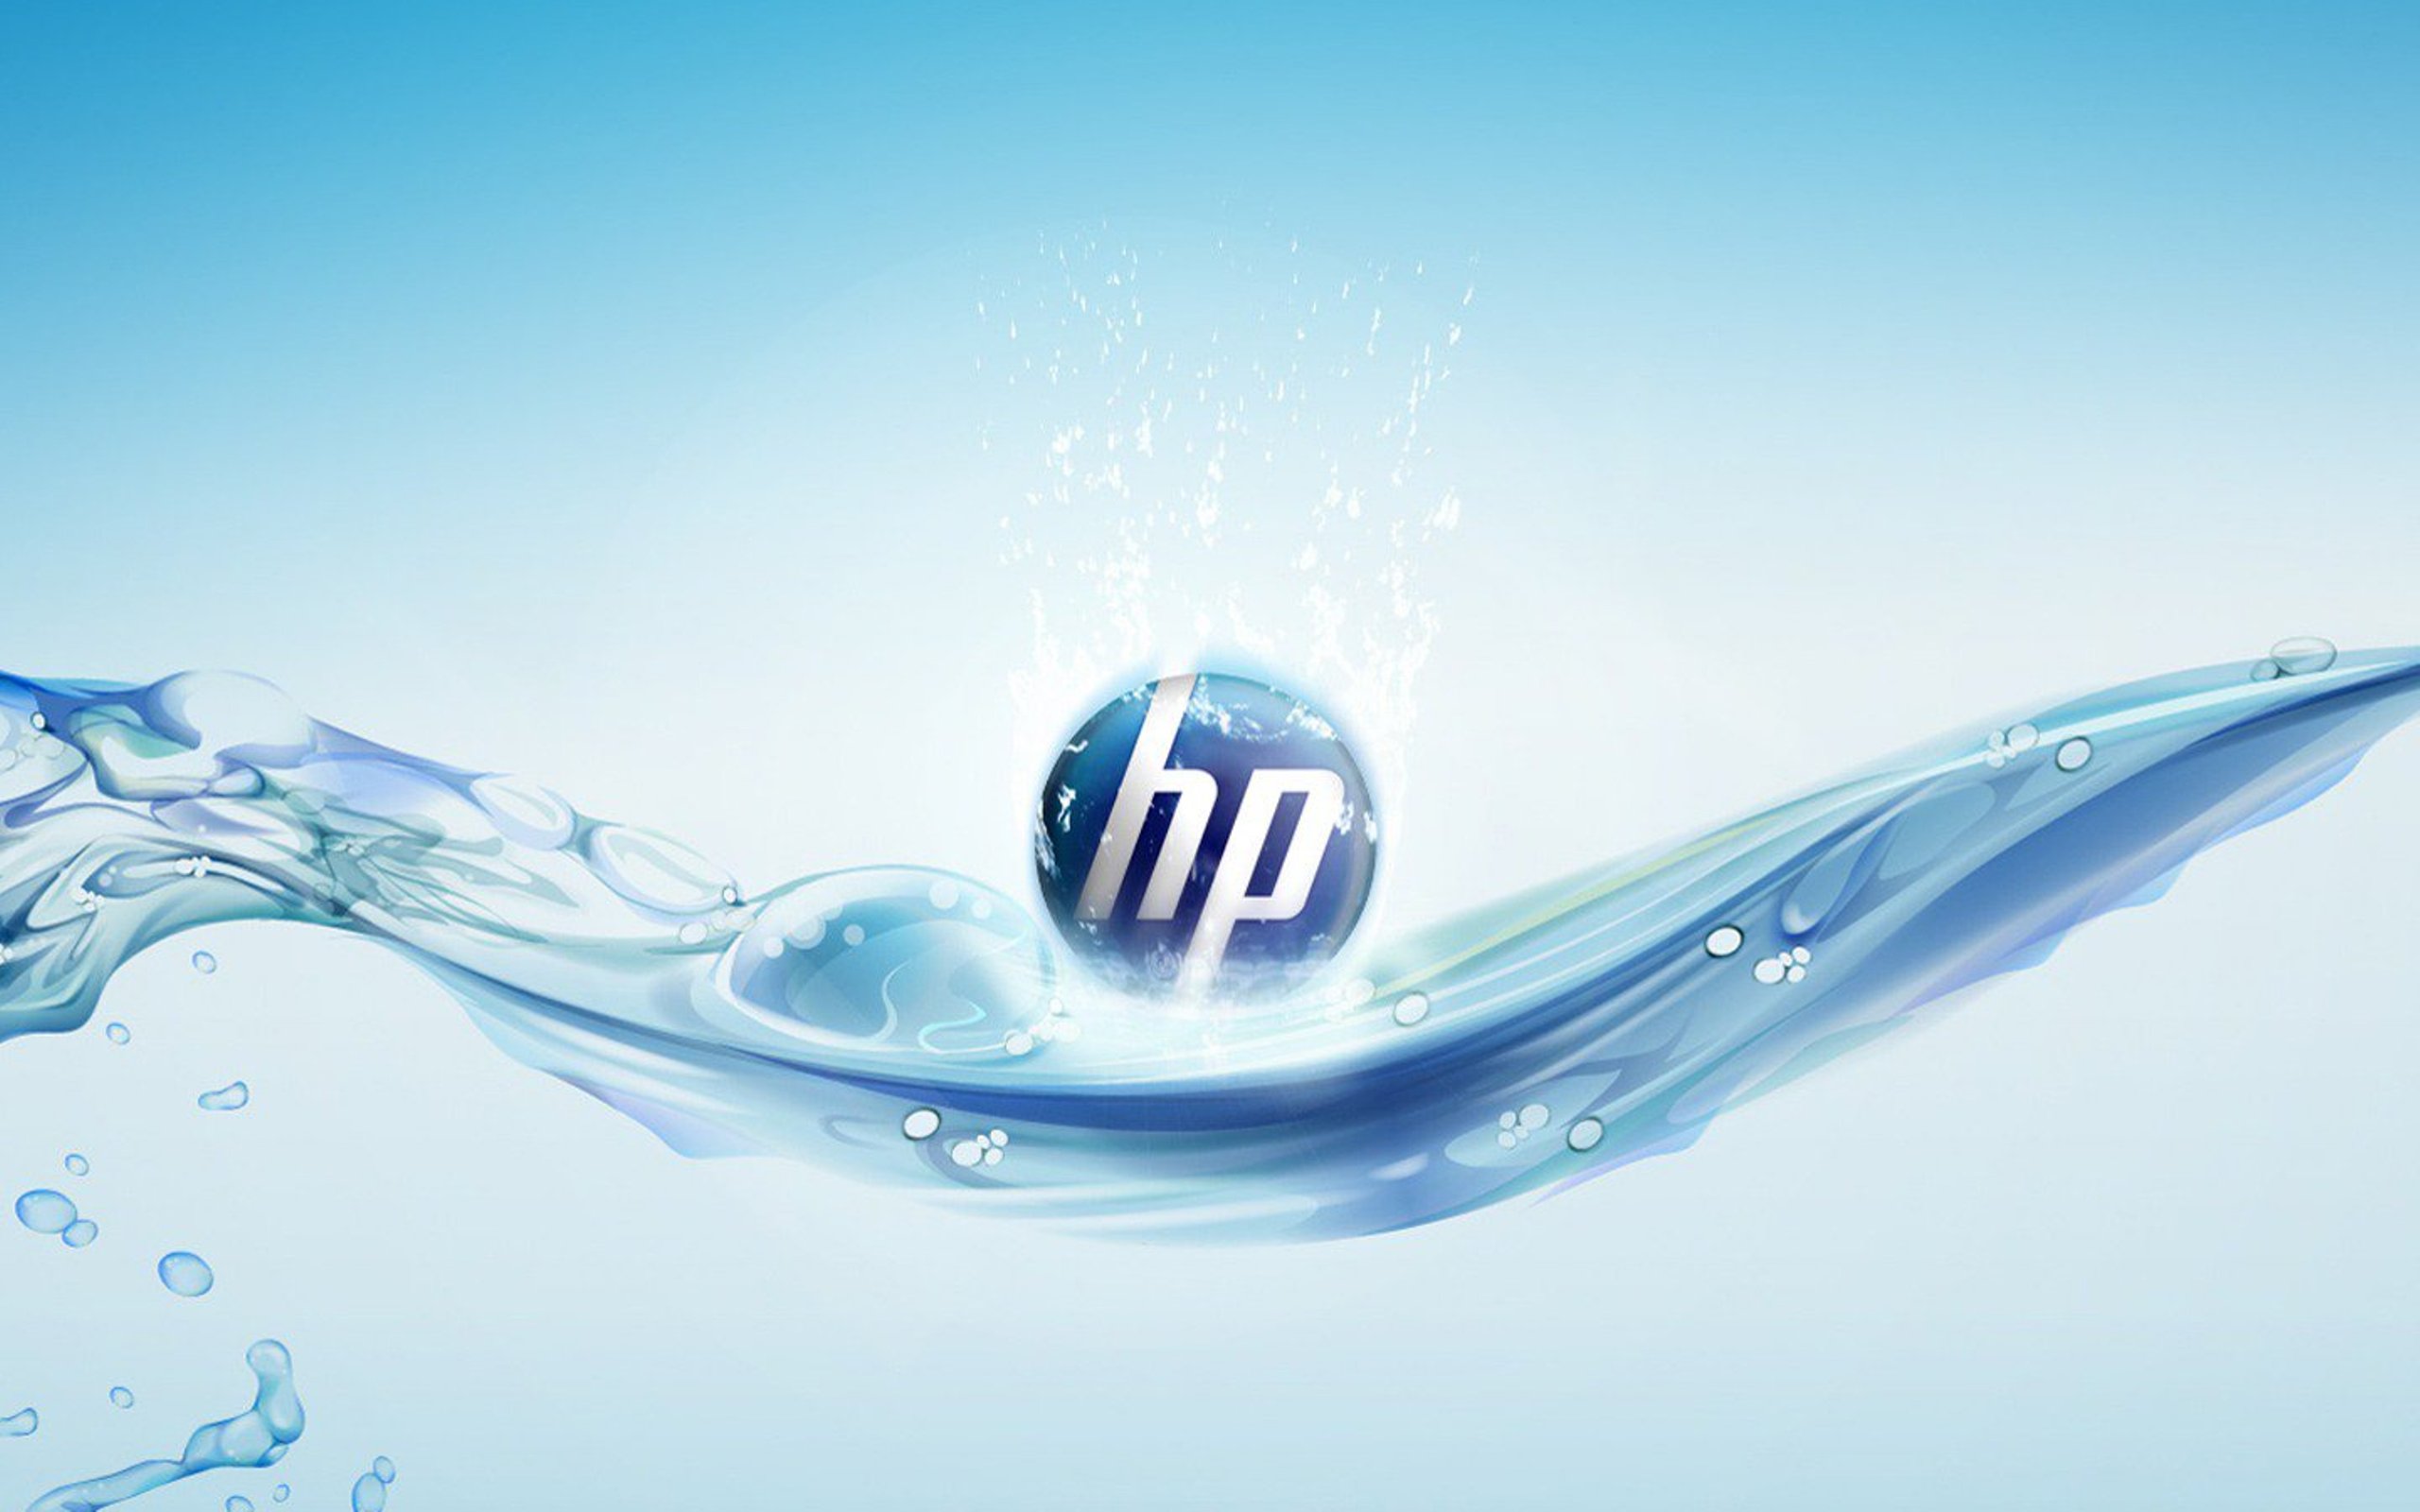 Hewlett Packard Puter Wallpaper Desktop Background